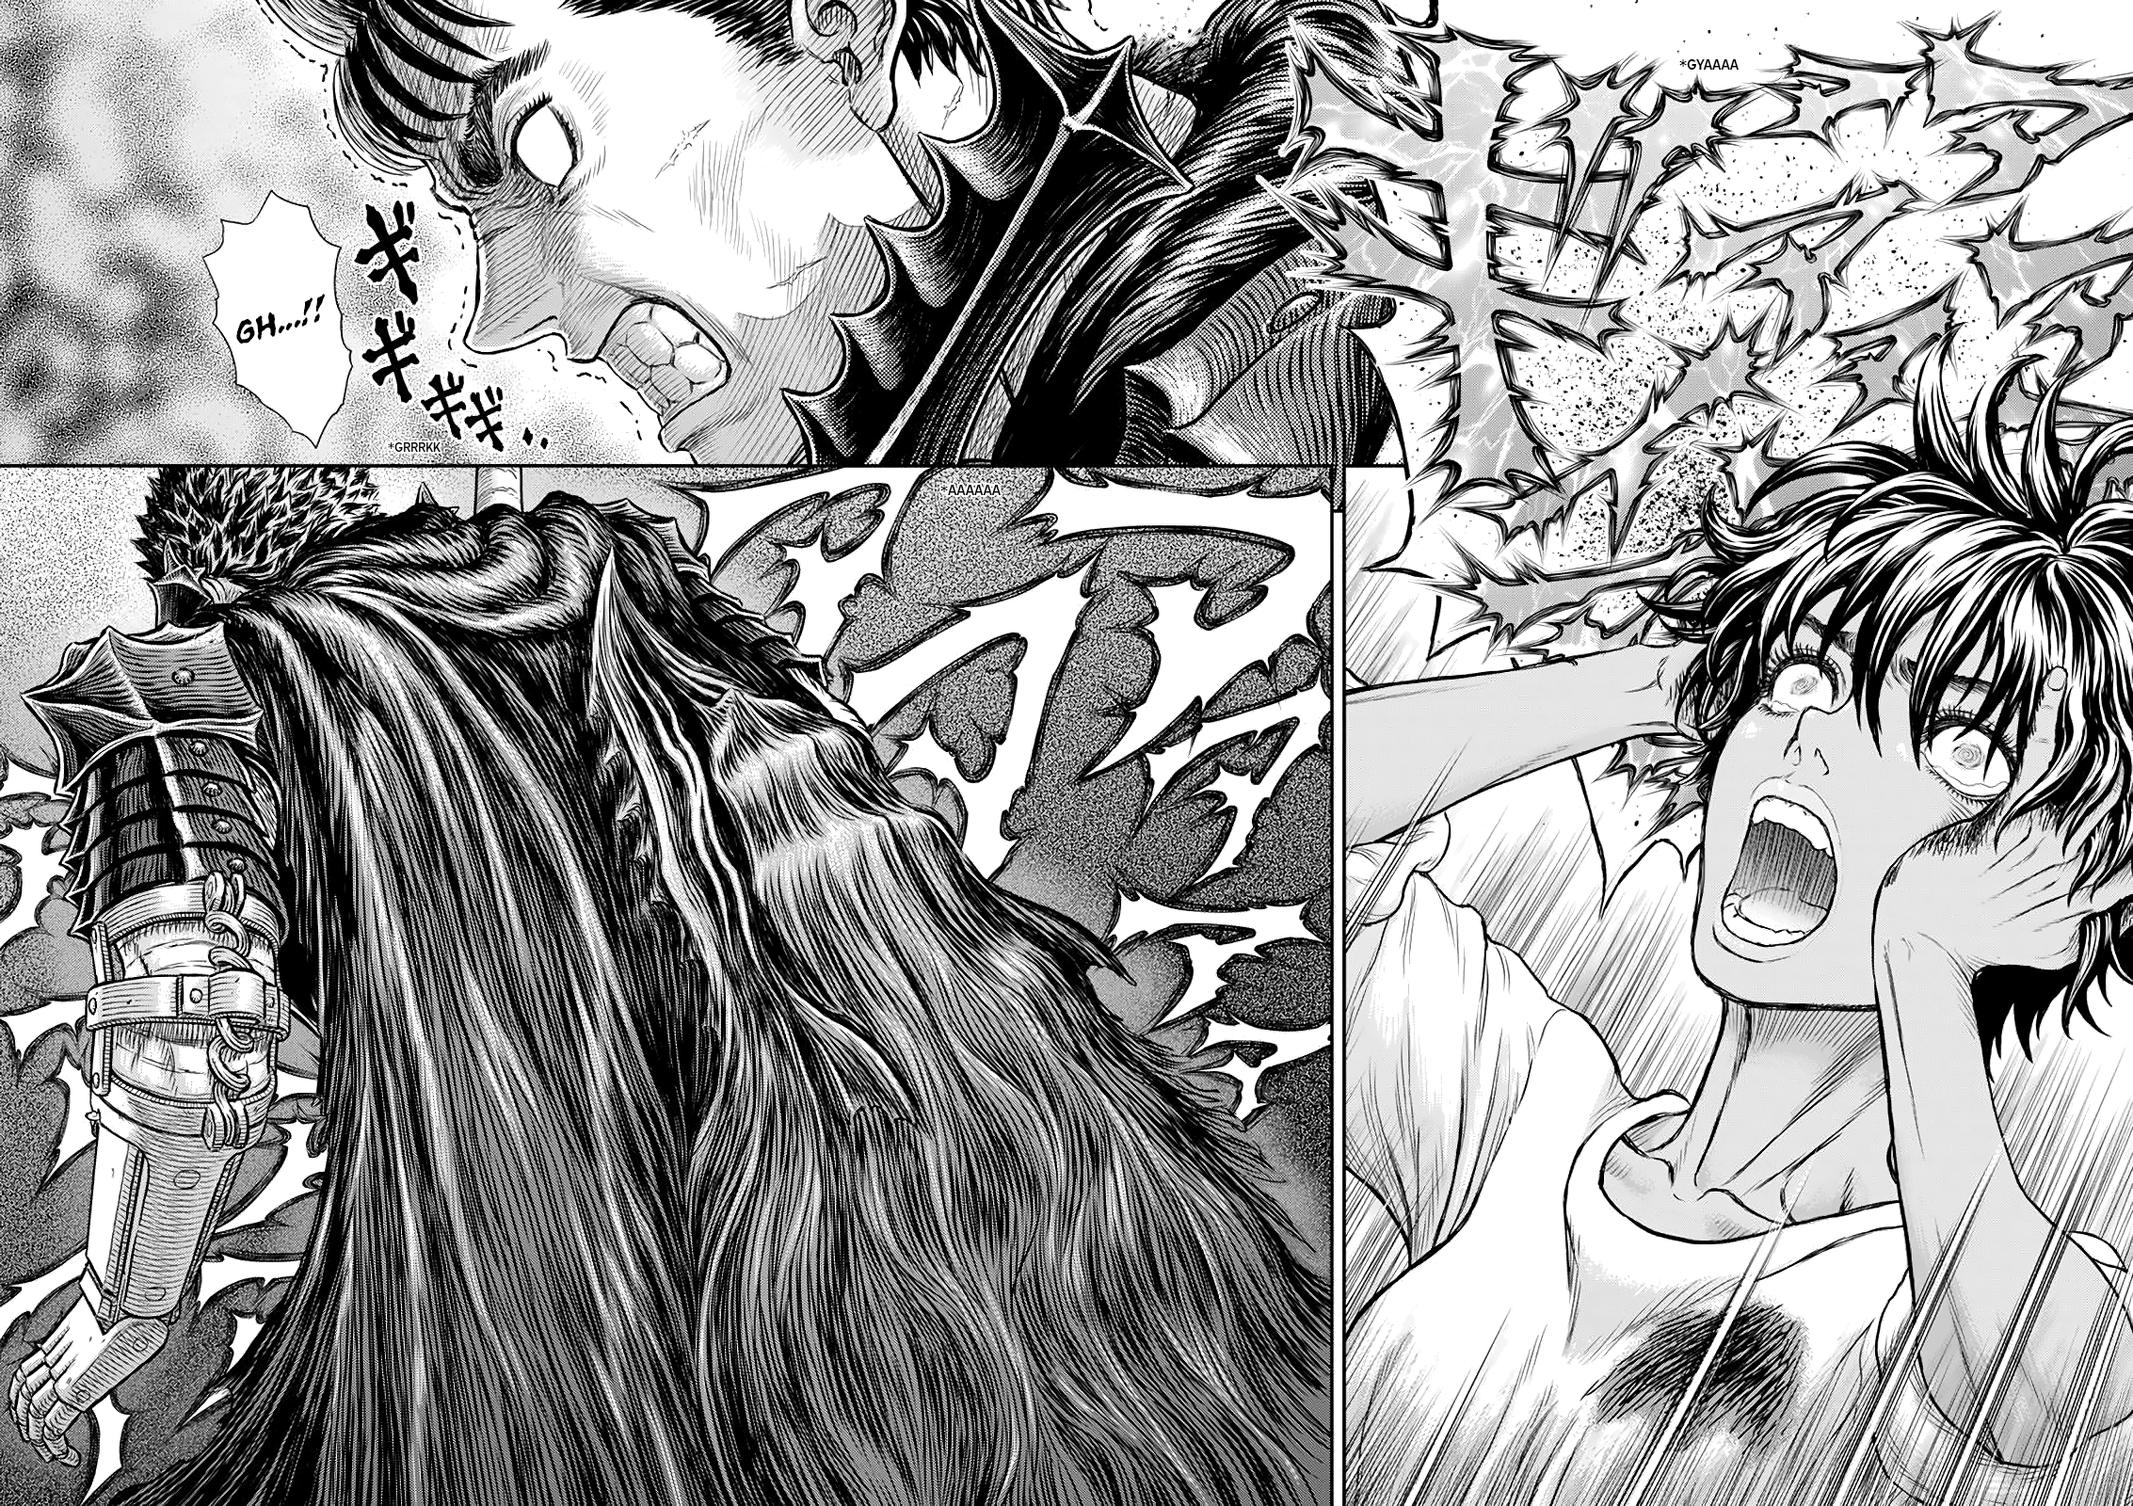 Berserk Manga Chapter 365 image 12